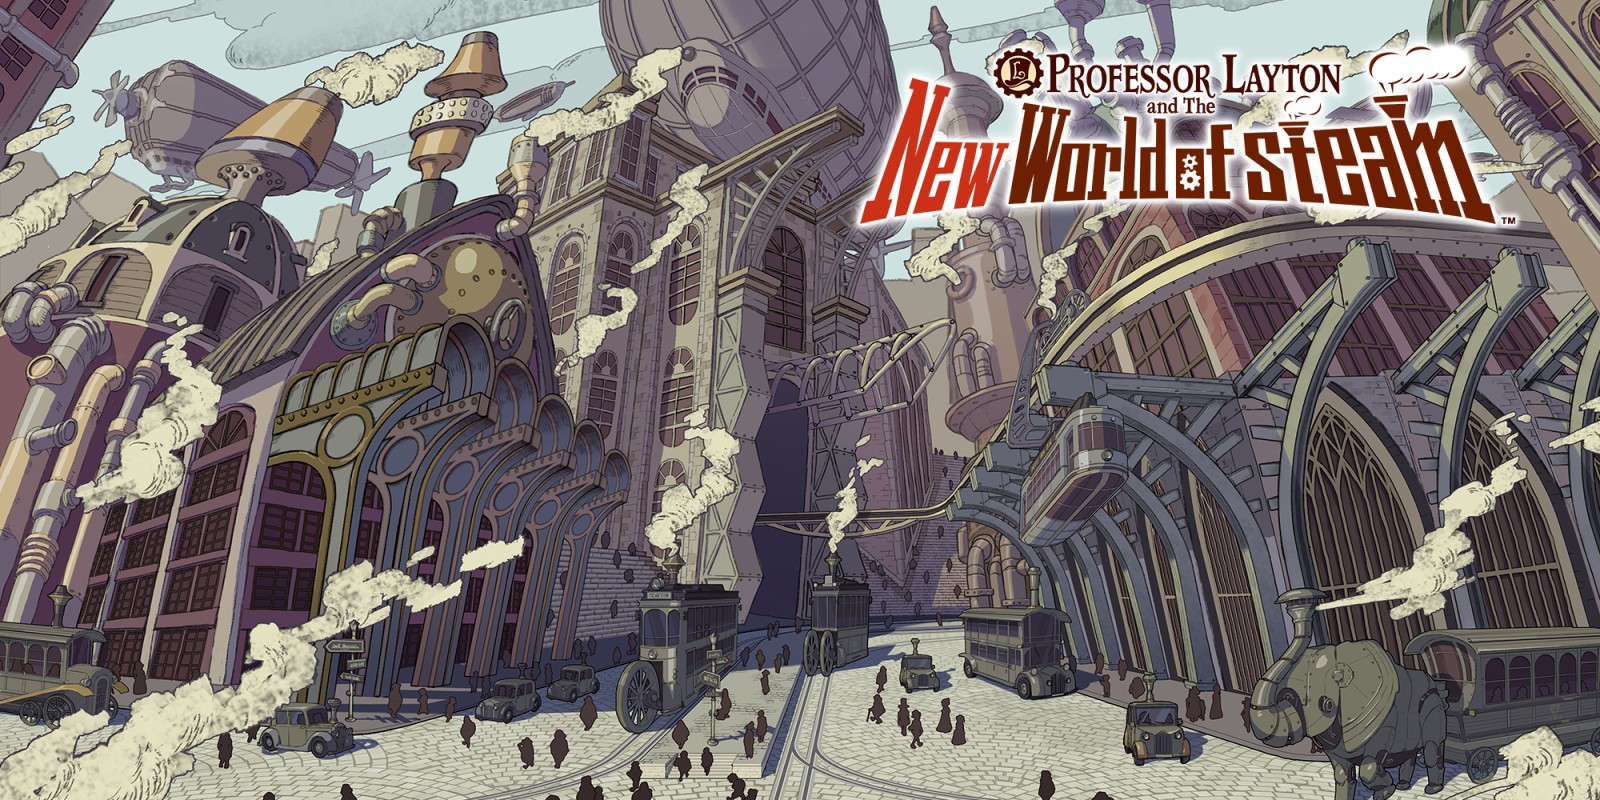 Professor Layton and the New World of Steam krijgt eerste gameplaybeelden